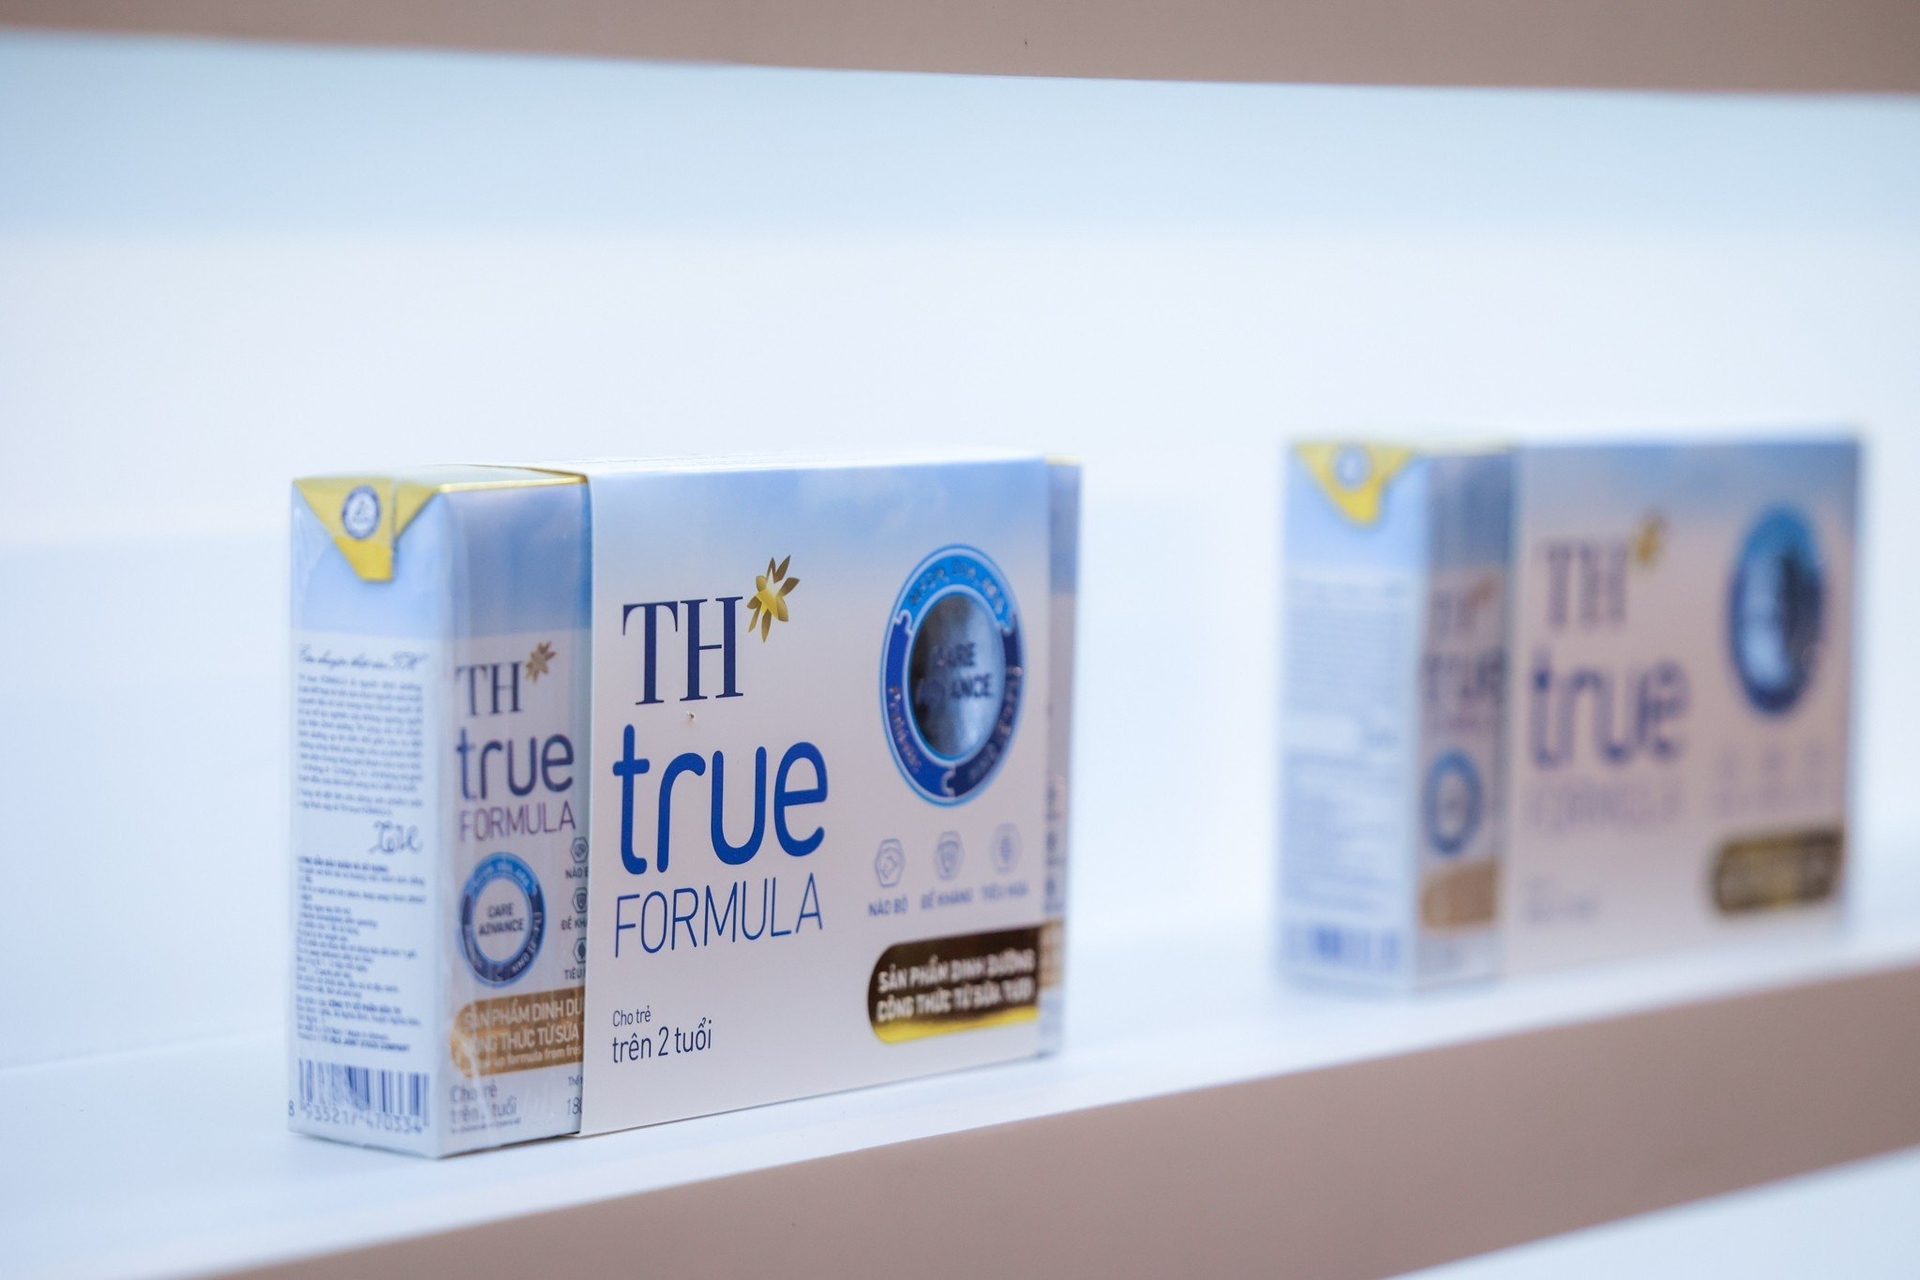 Sản phẩm dinh dưỡng công thức từ sữa tươi TH true FORMULA của Tập đoàn TH.